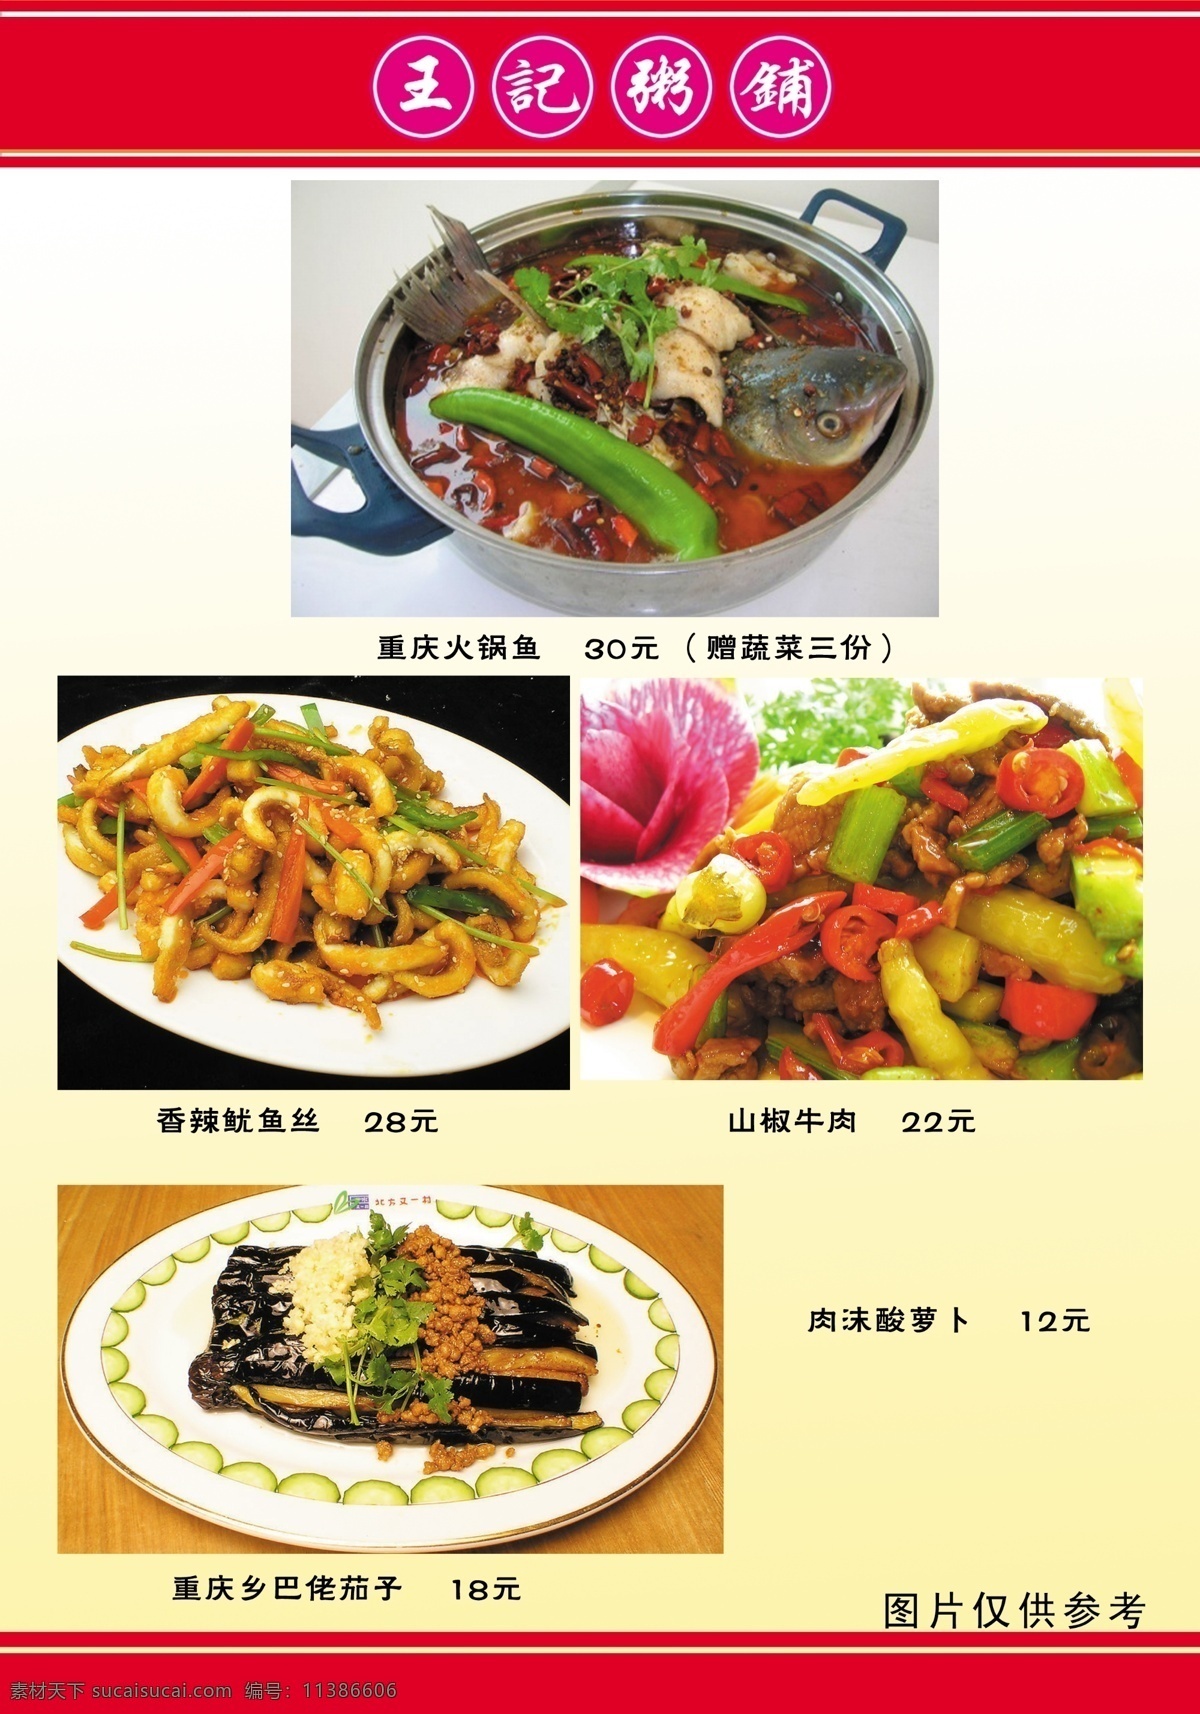 王 记 粥 铺 菜谱 食品餐饮 菜单菜谱 分层psd 平面广告 海报 设计素材 平面模板 psd源文件 白色